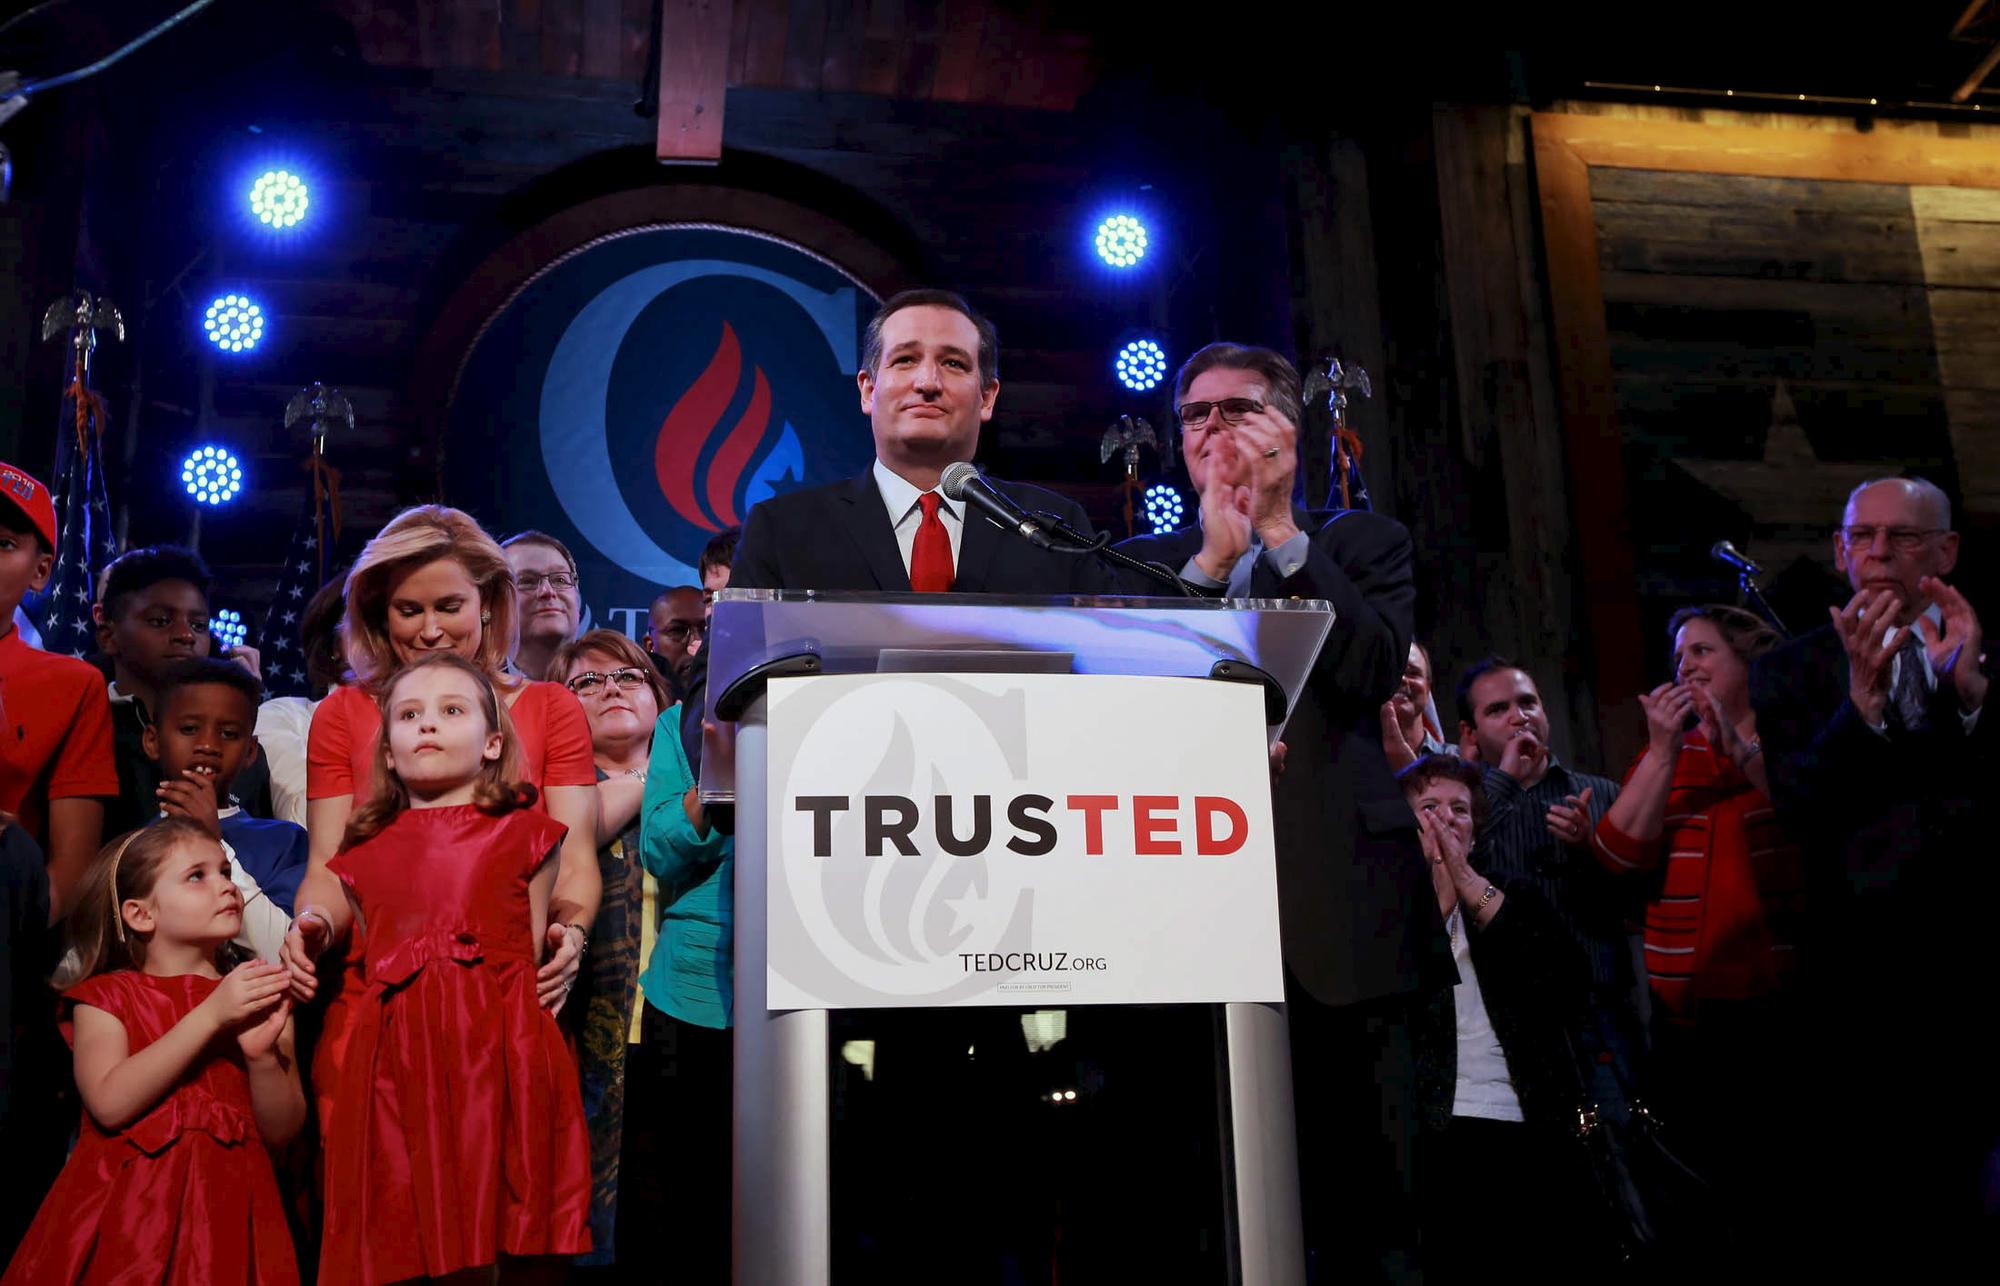 Le républicain Ted Cruz a rallié ses électeurs du Texas sous sa bannière "Trusted" ("faites-moi confiance"). [REUTERS - Richard Carson]